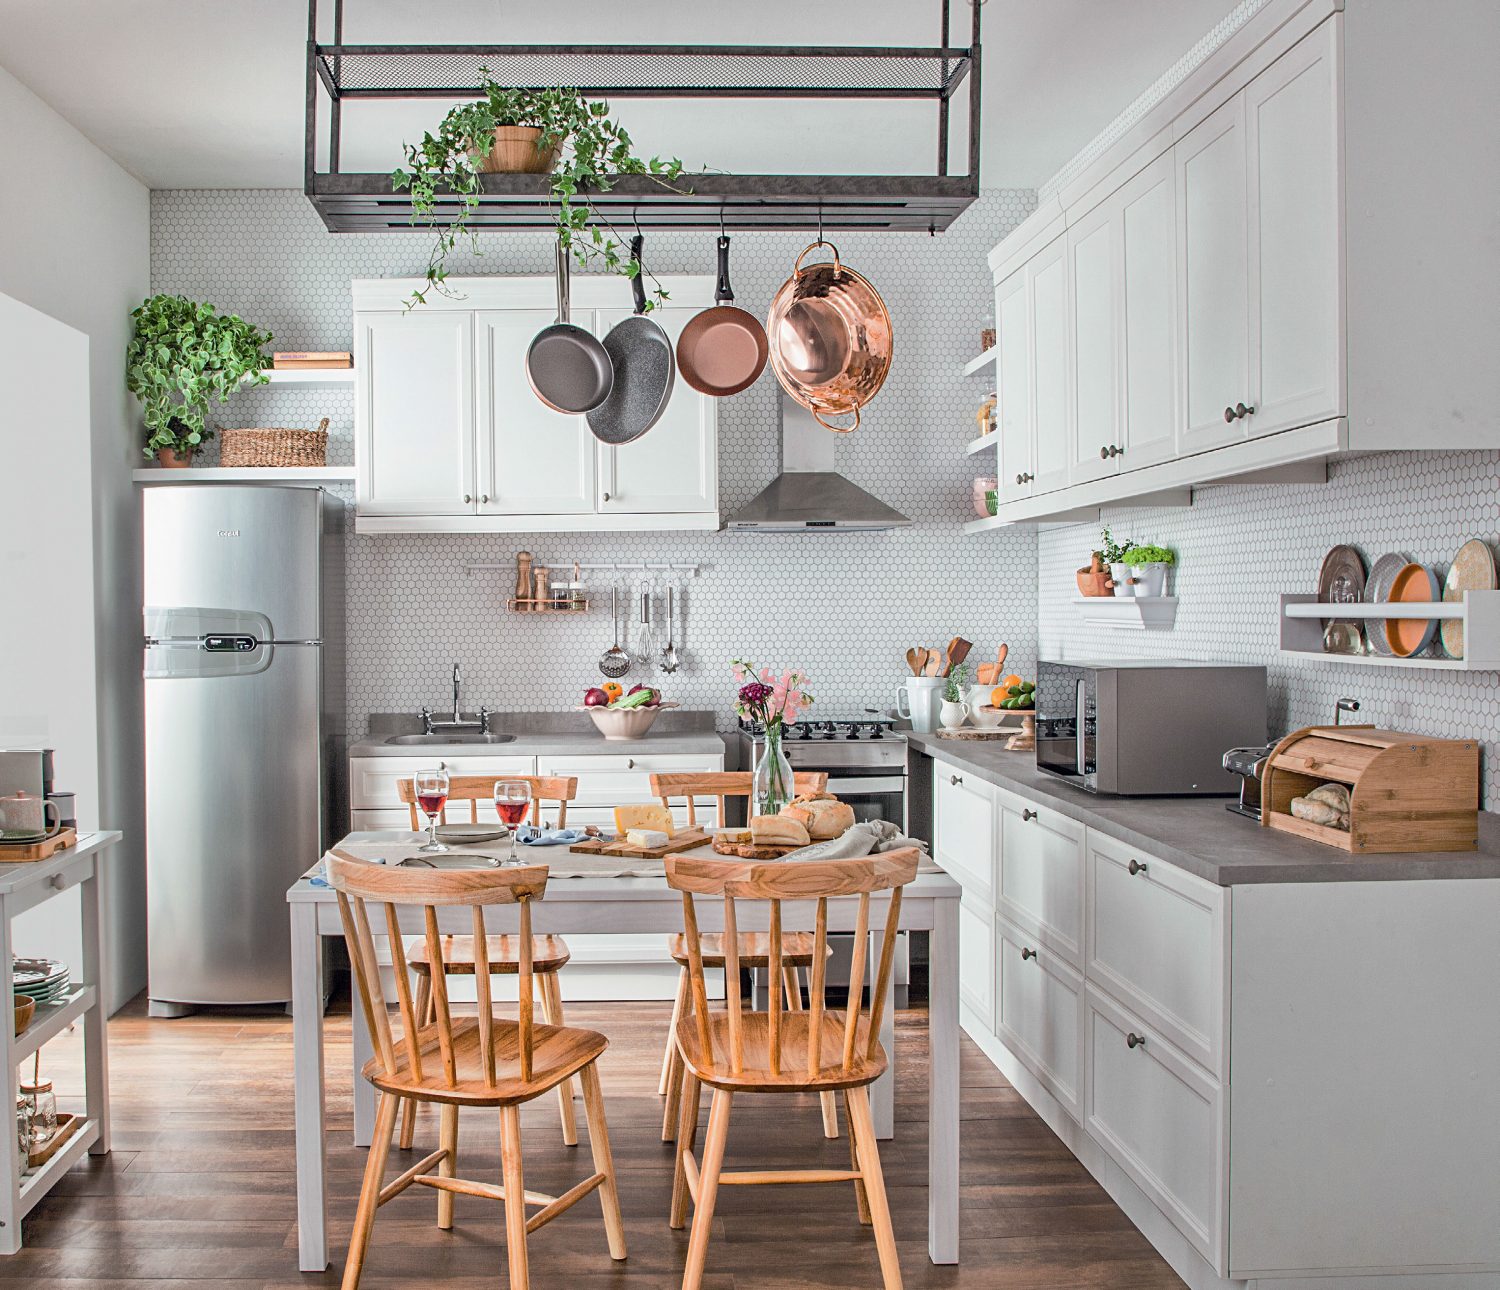  Чимэг төрхтэй 9 м² цагаан гал тогоо нь хувийн шинж чанартай ижил утгатай